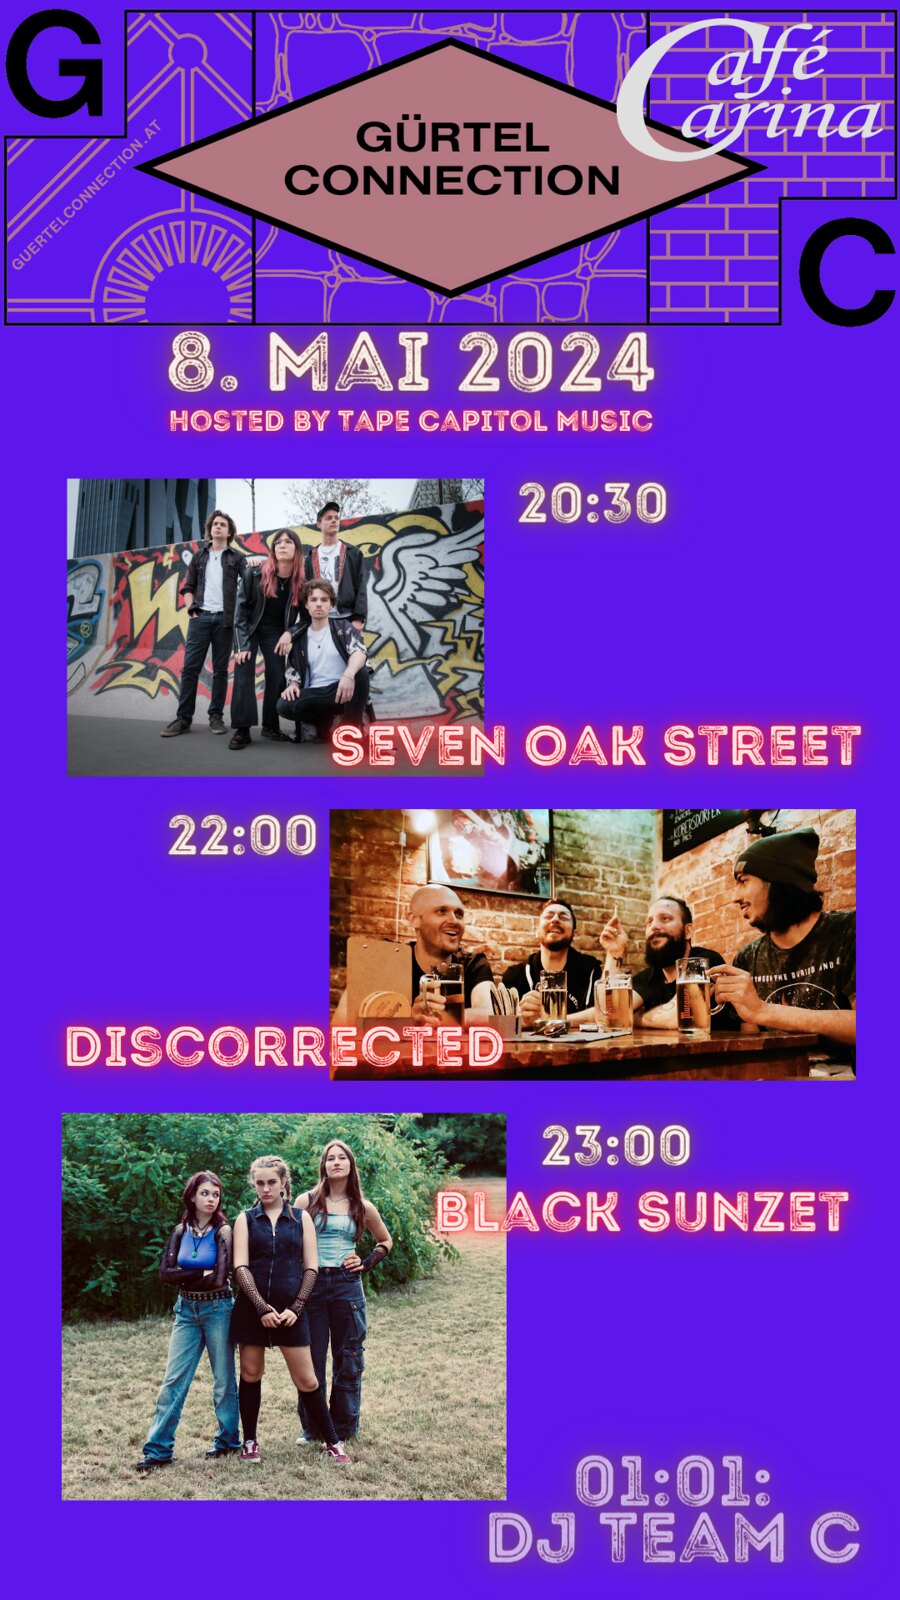 Gürtel Connection #14 am 8. May 2024 @ Café Carina.